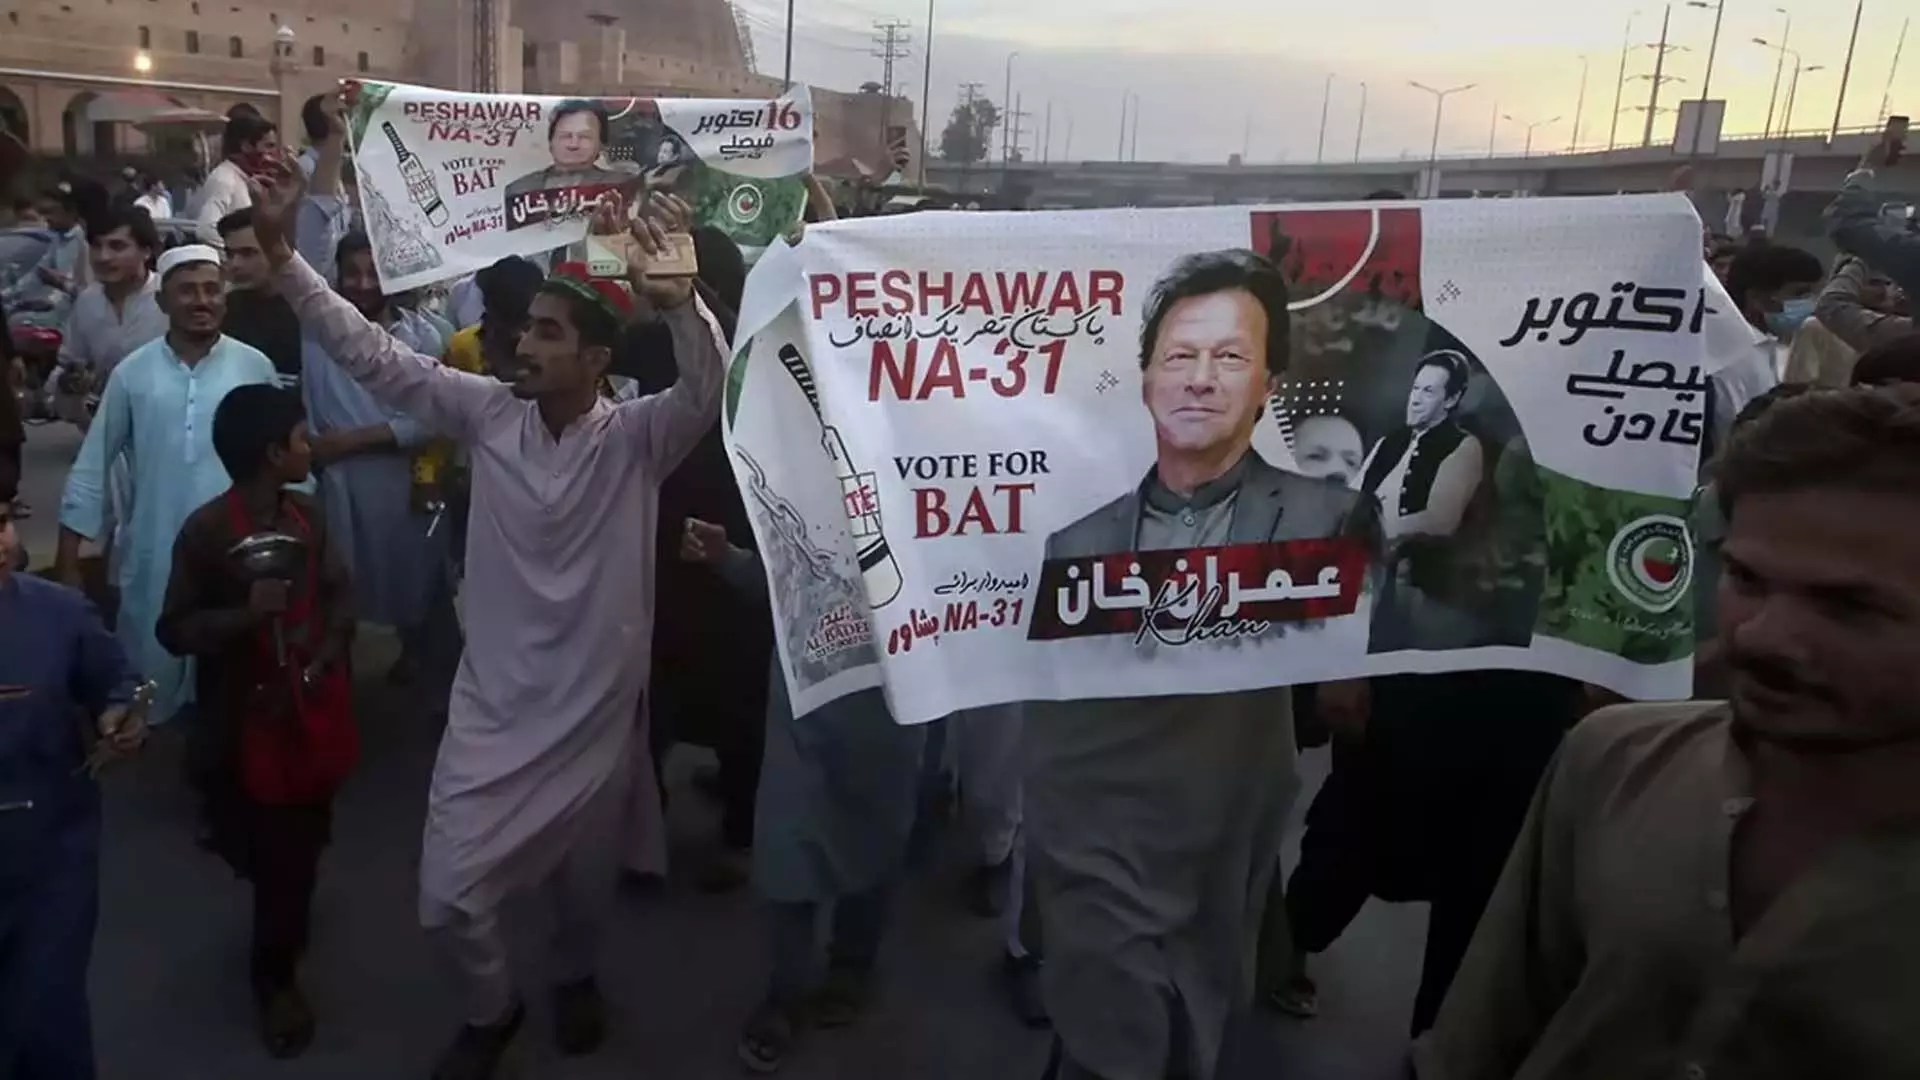 पाकिस्तान चुनाव आयोग ने आयुक्त के धांधली आरोपों की जांच के लिए उच्च स्तरीय समिति